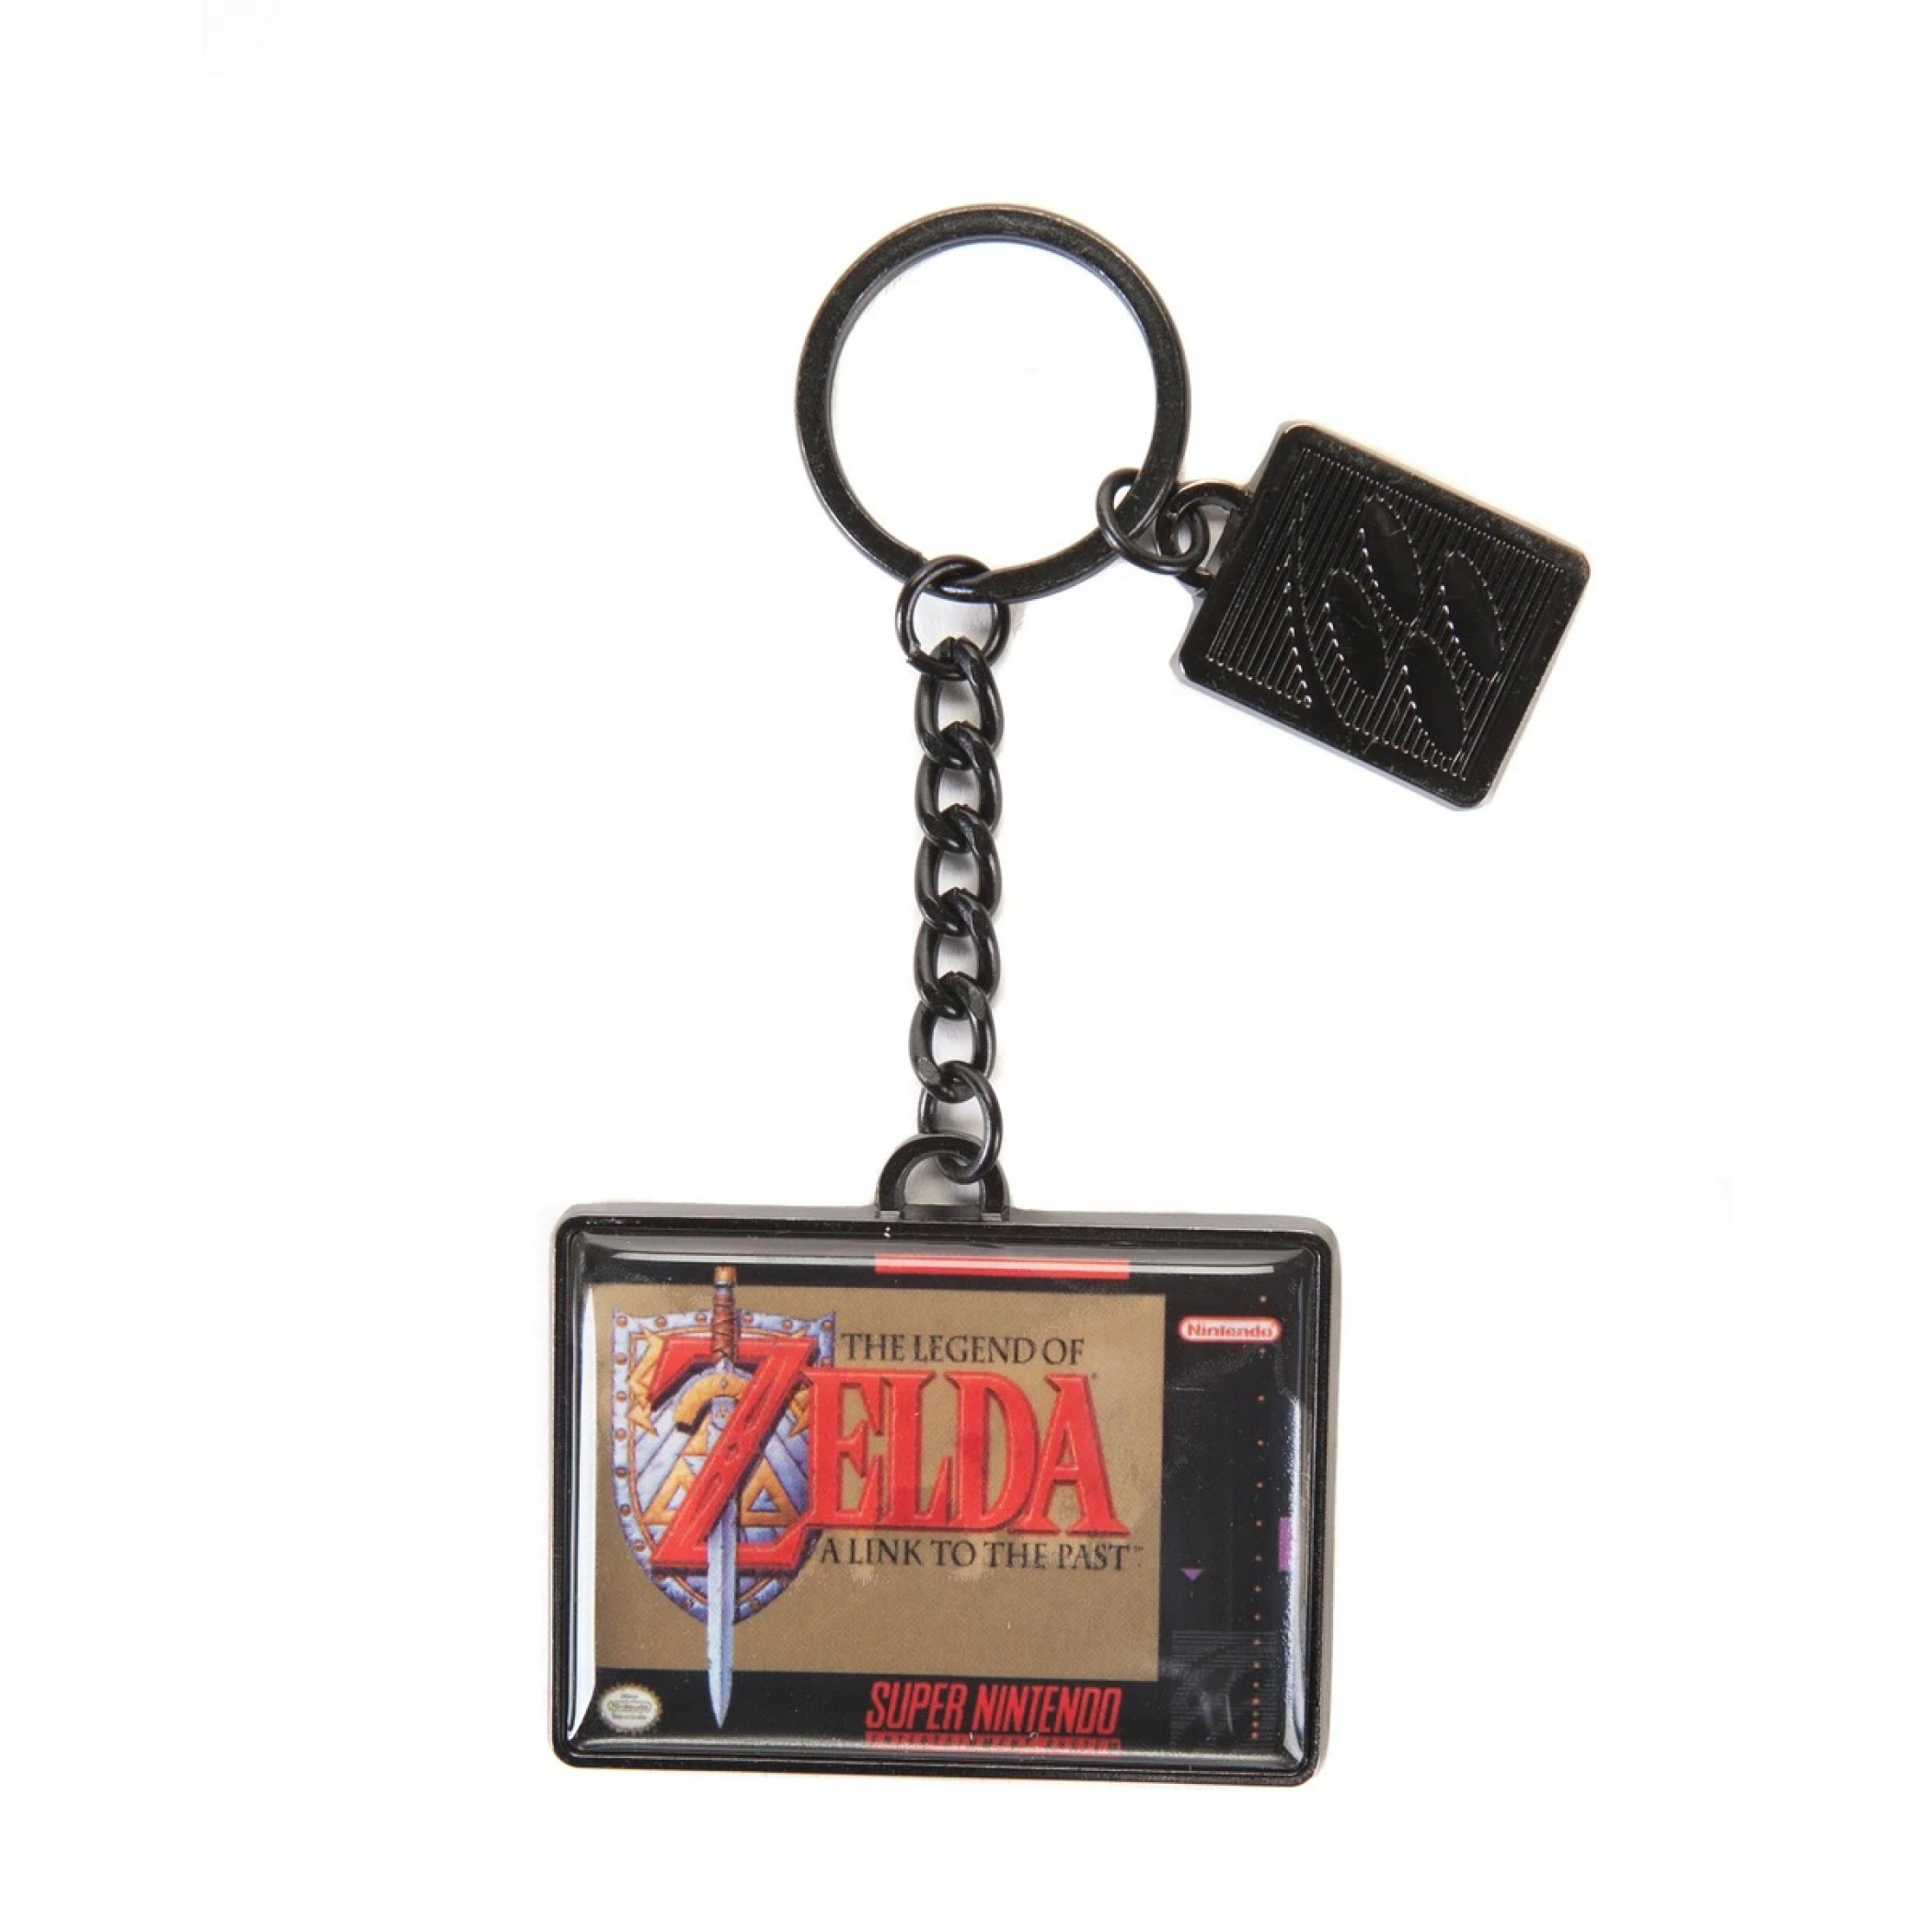 Nintendo Legend of Zelda Video Game Cartridge Keychain